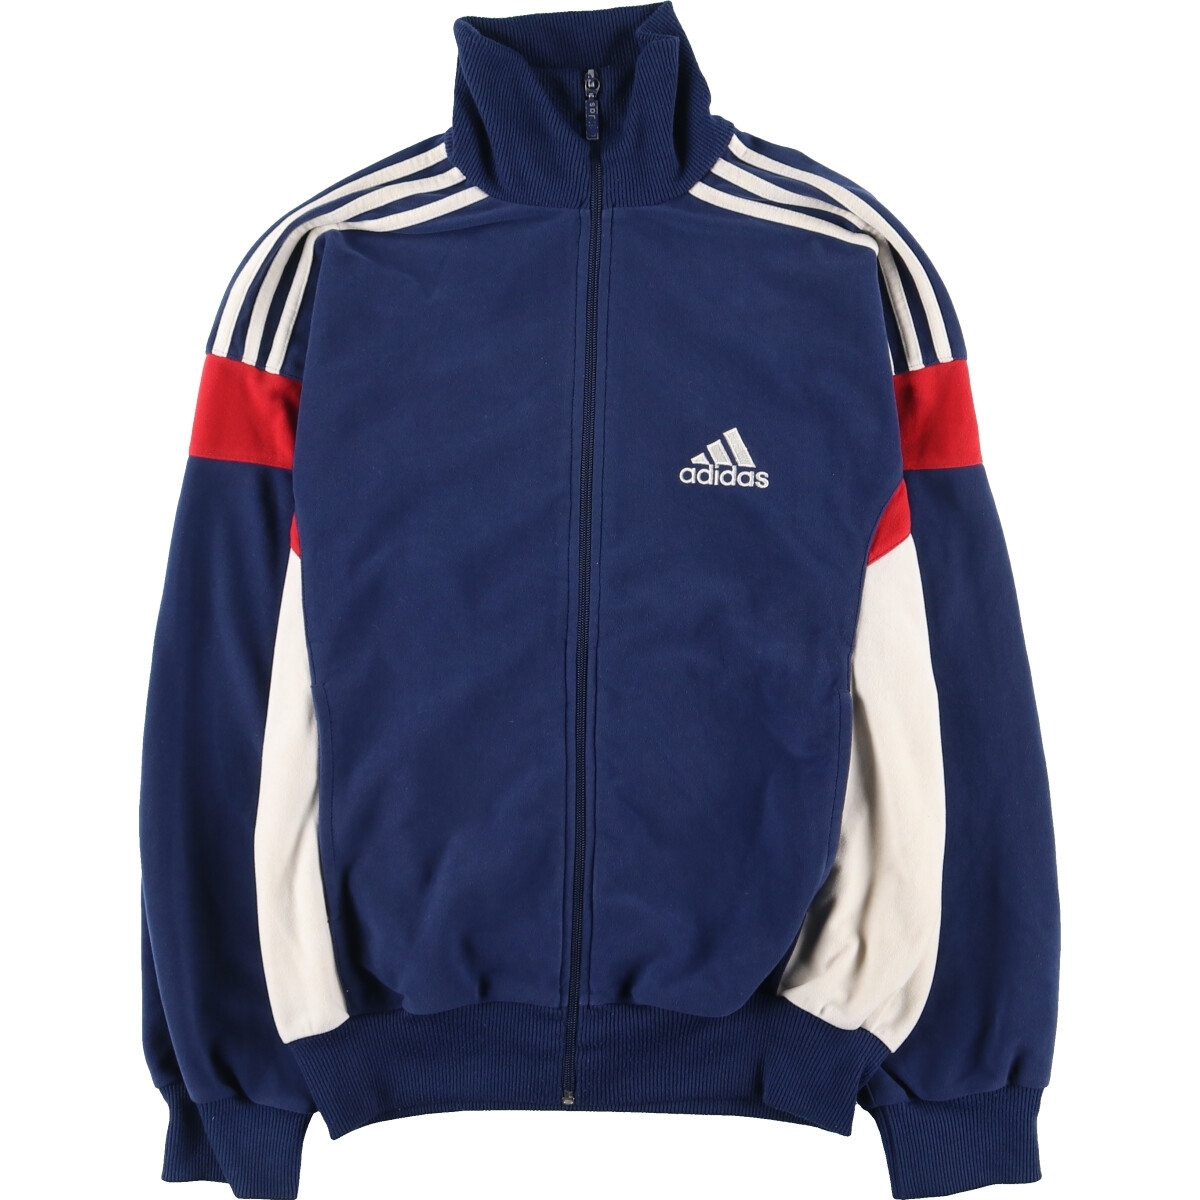  б/у одежда 90 годы Adidas adidas спорт Performance Logo велюр джерси спортивная куртка мужской S Vintage /eaa414166